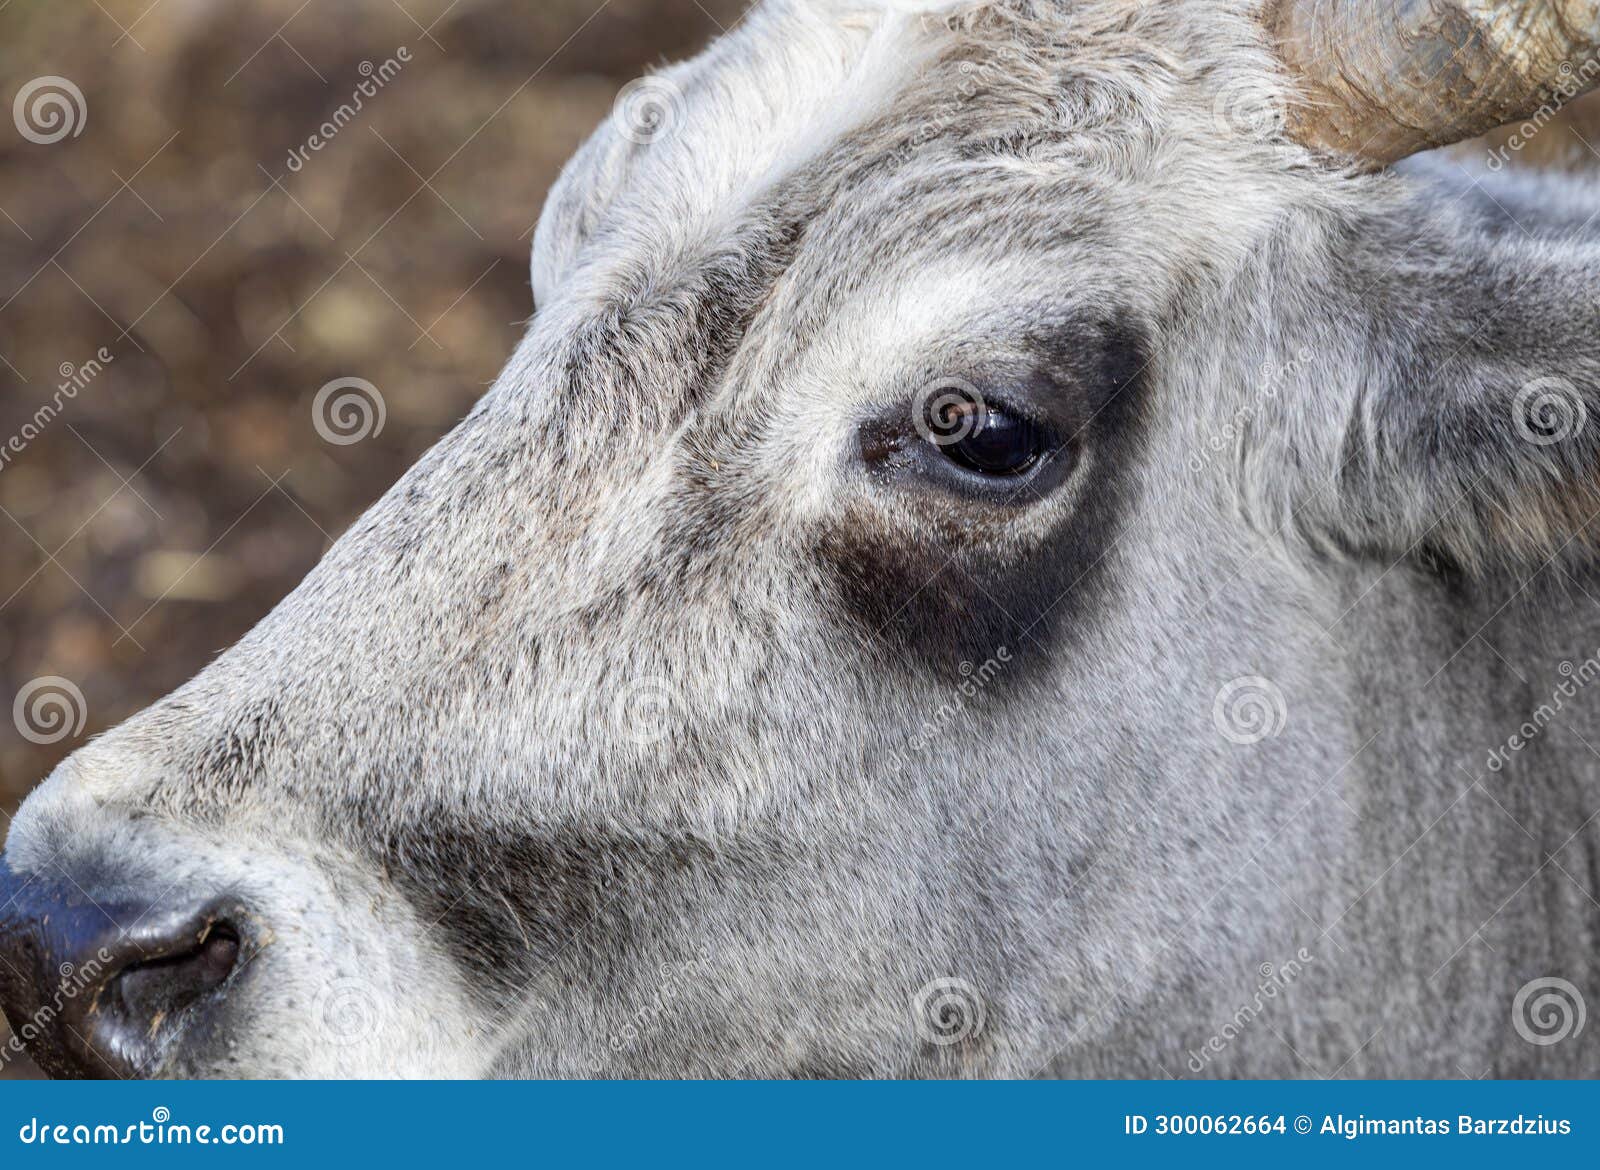 ruminant hungarian gray cattle bull in the pen, big horns, portrait, eye